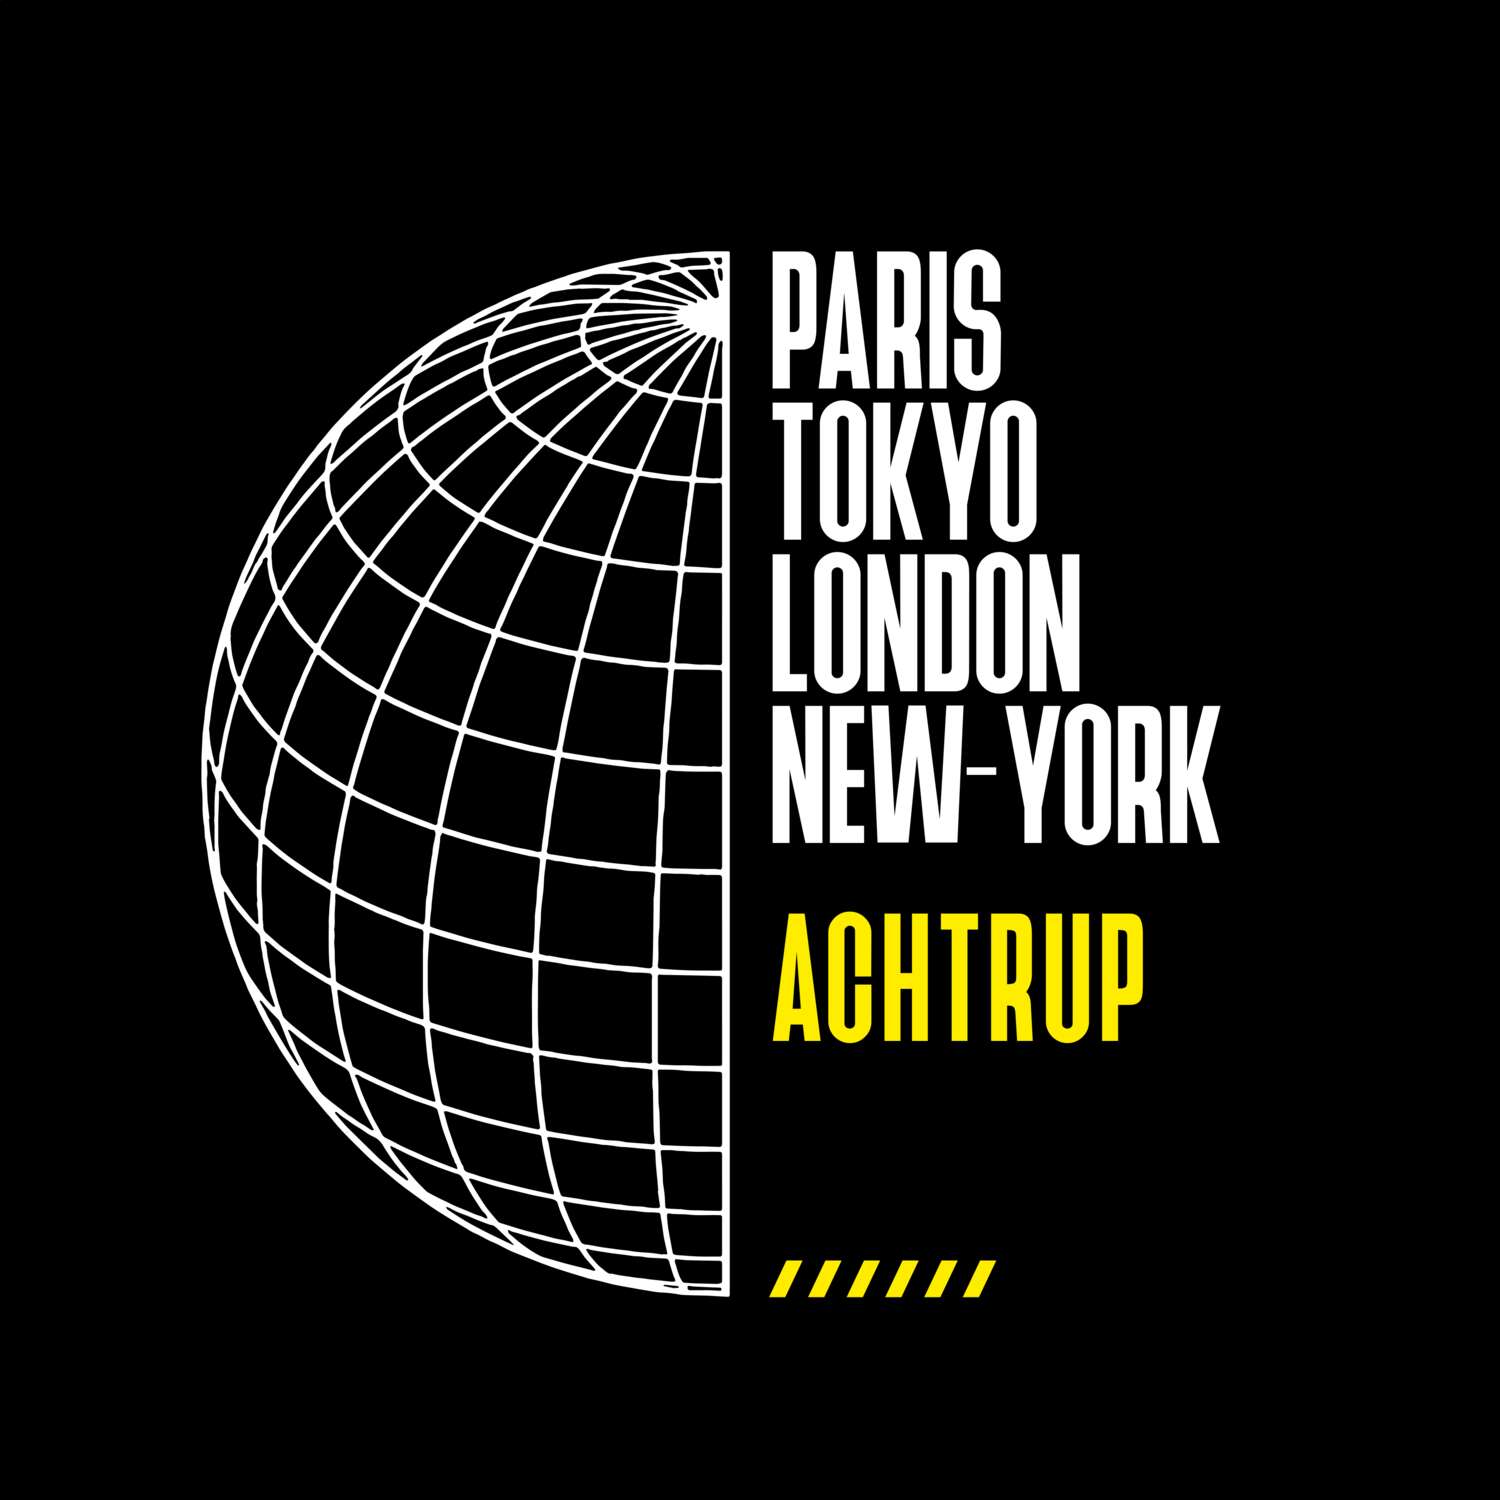 Achtrup T-Shirt »Paris Tokyo London«